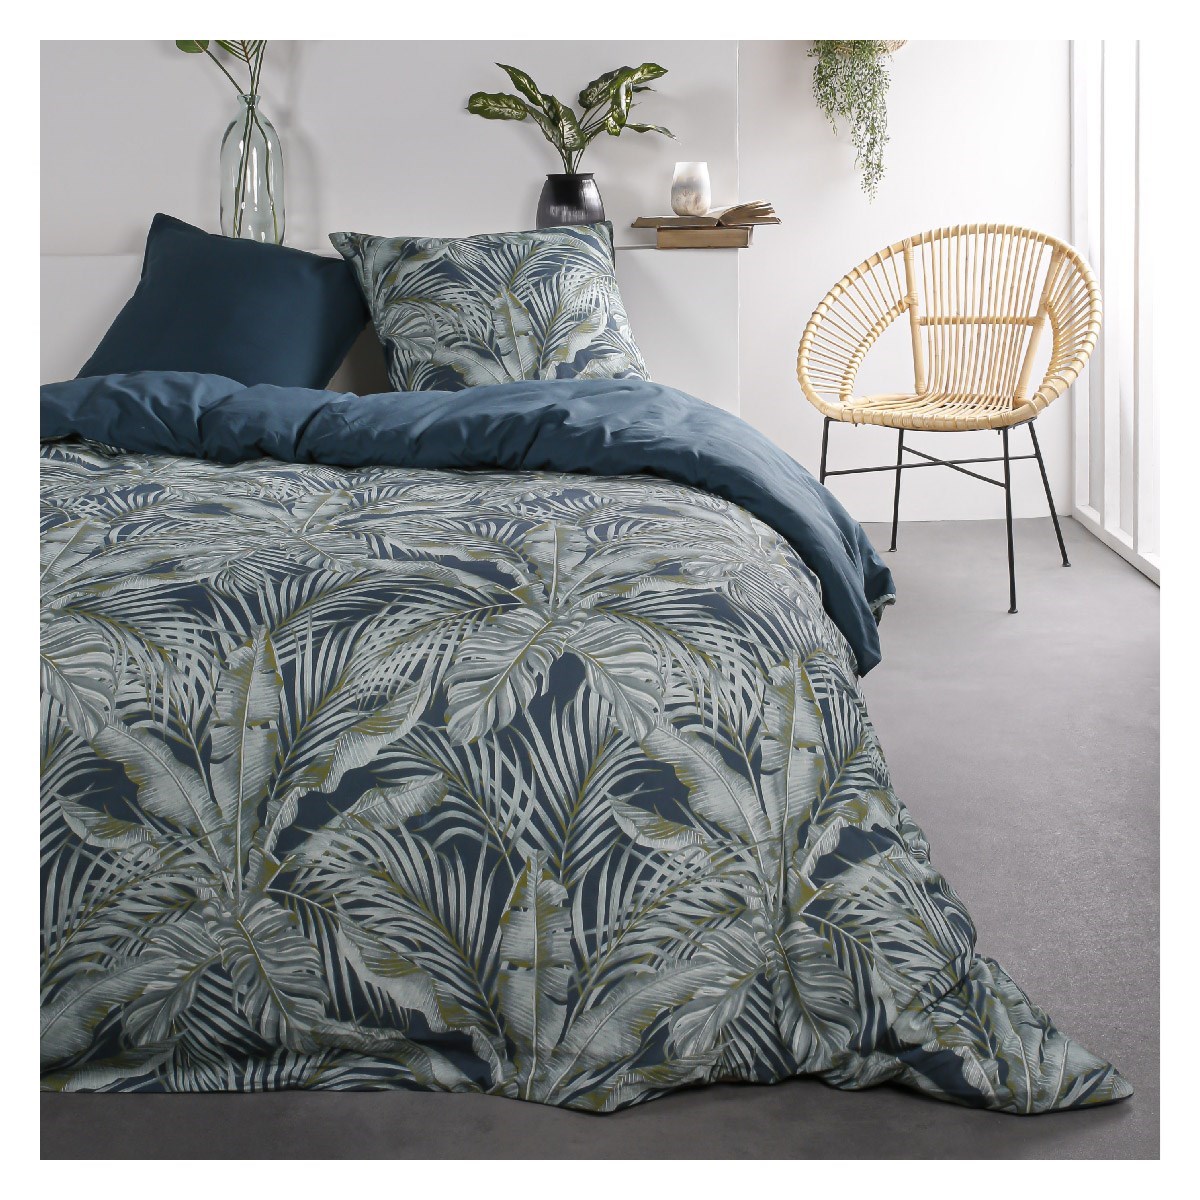 Parure de lit 2 personnes imprimé jungle en Coton Bleu 220x240 cm